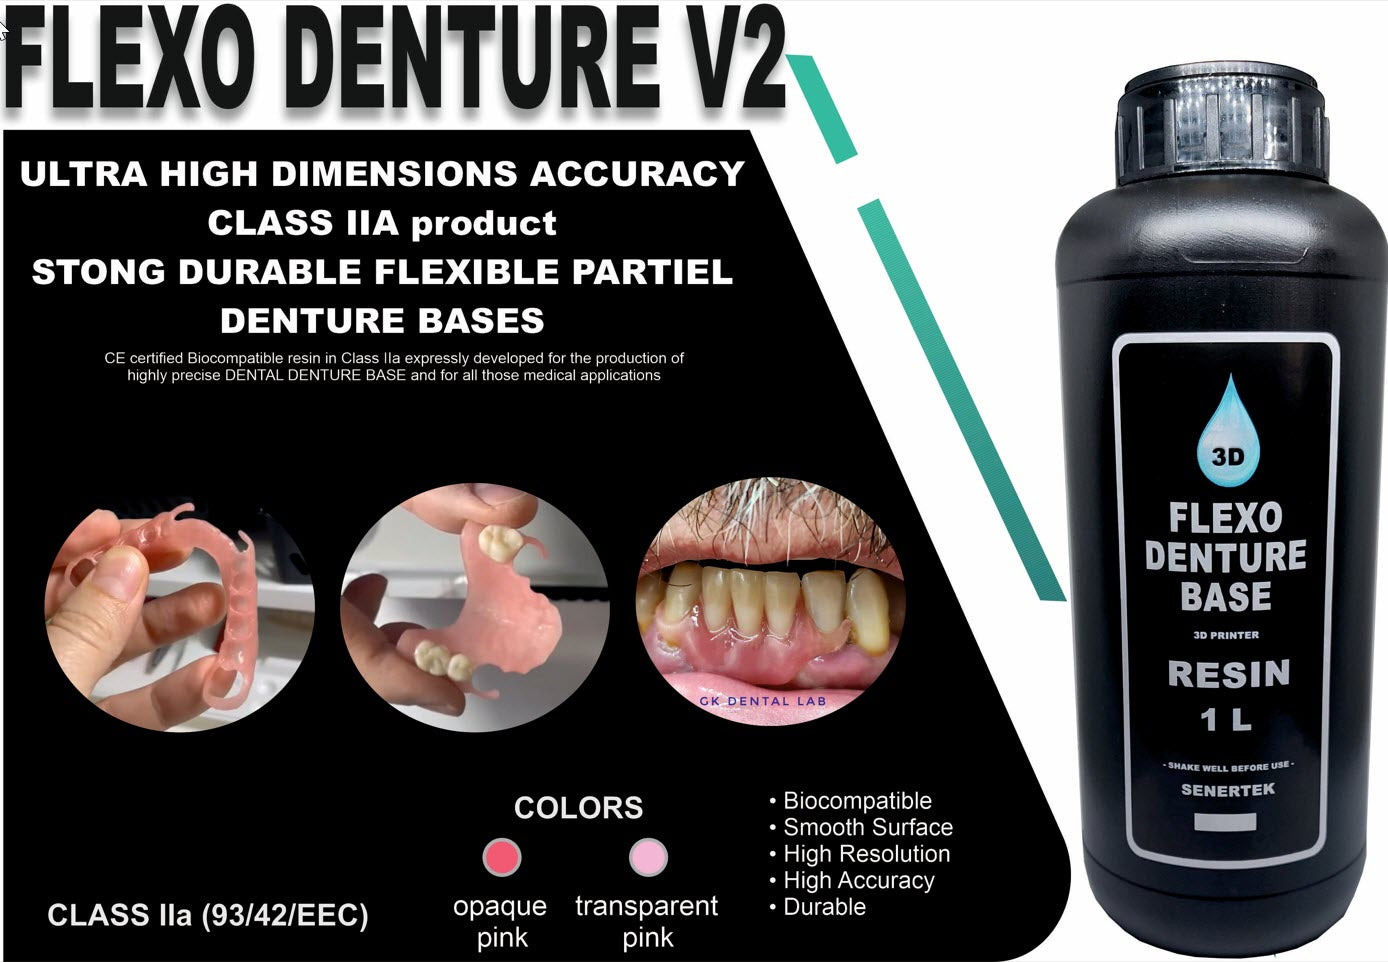 Senertek Flexo Denture Base V2 - FLEX Partial Denture Resin